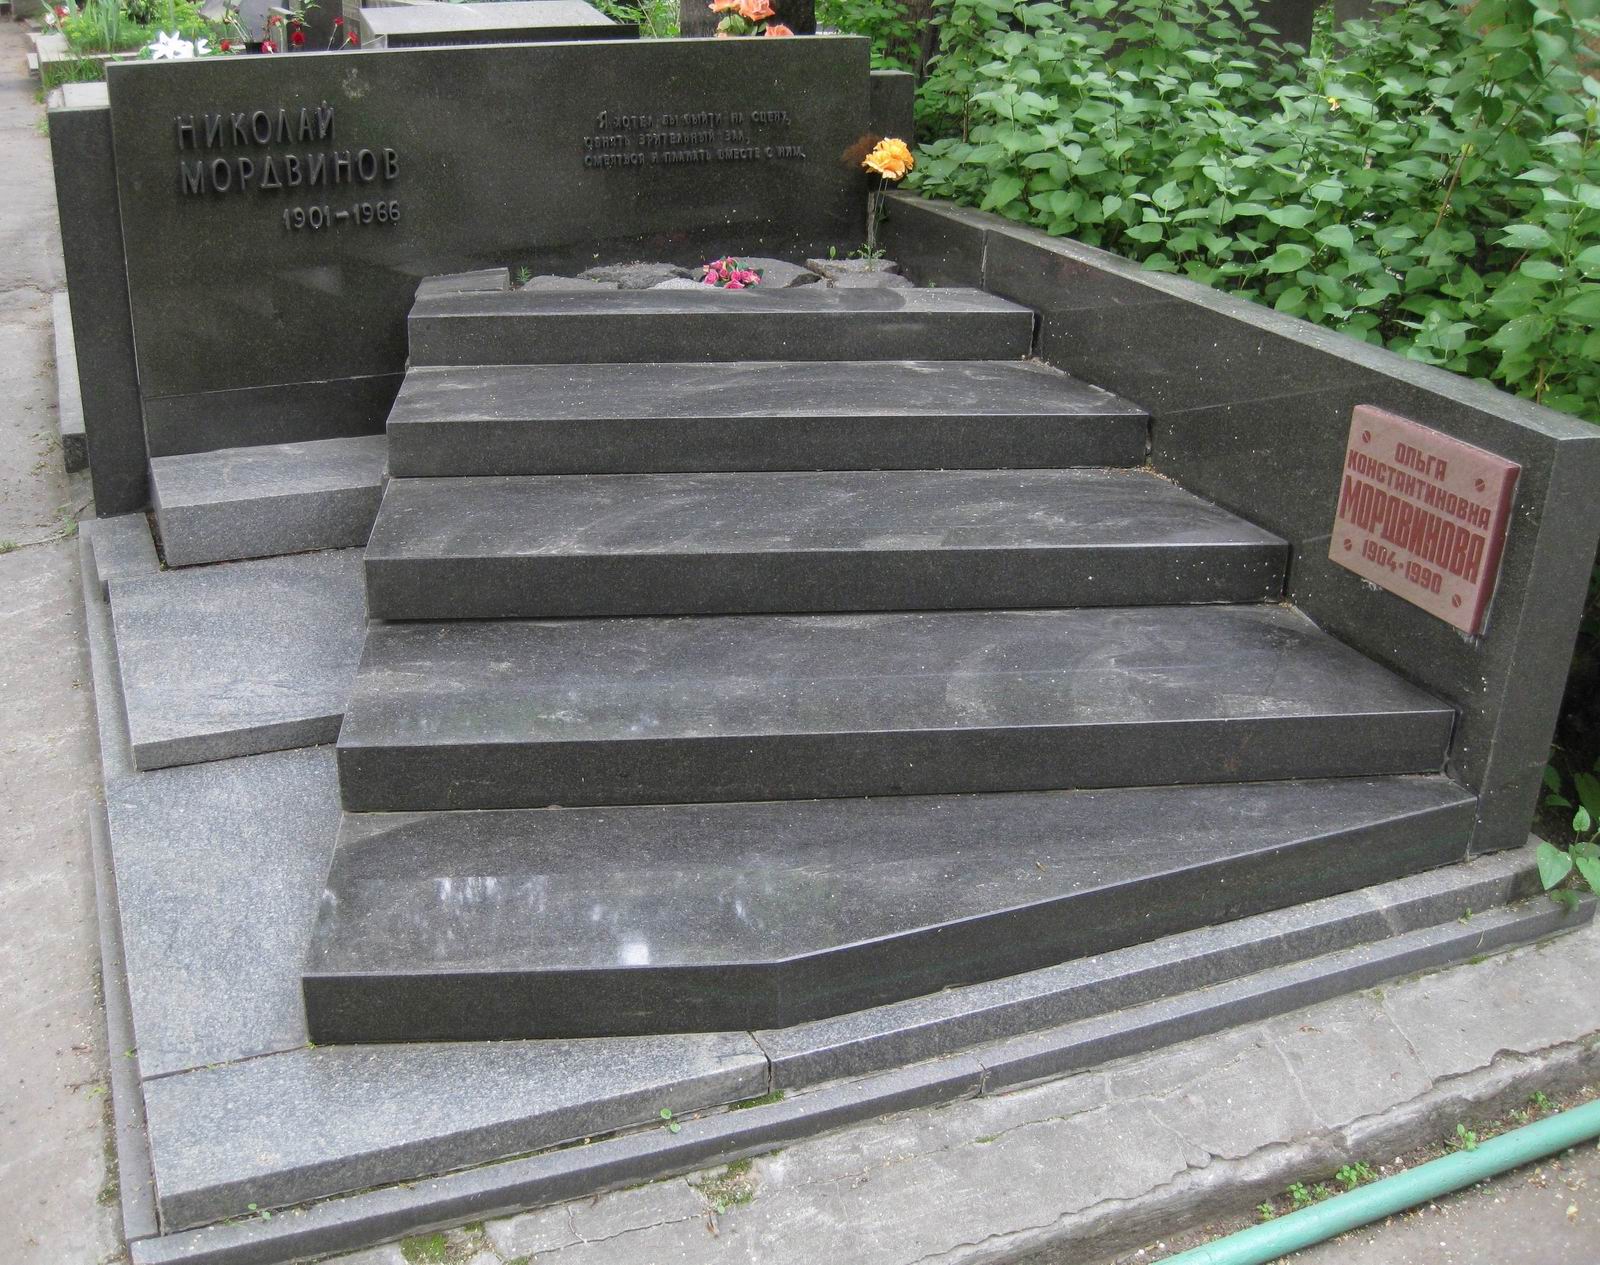 Памятник на могиле Мордвинова Н.Д. (1901–1966), ск. И.Першудчев, на Новодевичьем кладбище (6–26–12). Нажмите левую кнопку мыши, чтобы увидеть фрагмент памятника.